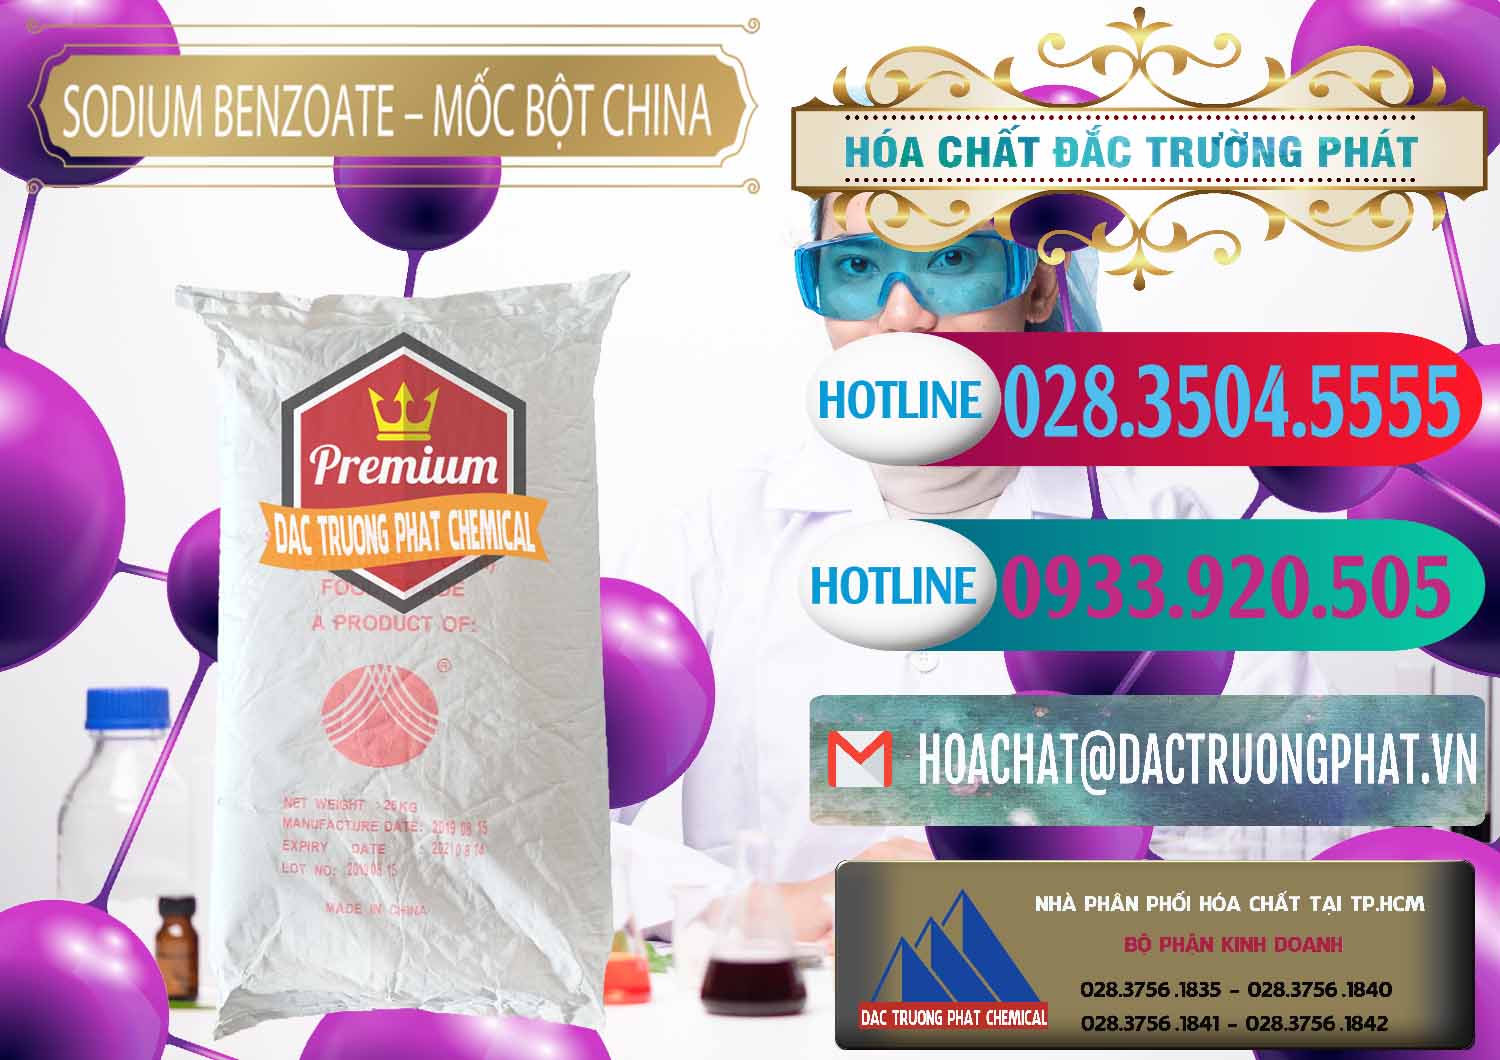 Đơn vị chuyên bán và cung ứng Sodium Benzoate - Mốc Bột Chữ Cam Food Grade Trung Quốc China - 0135 - Nhà phân phối và cung ứng hóa chất tại TP.HCM - truongphat.vn